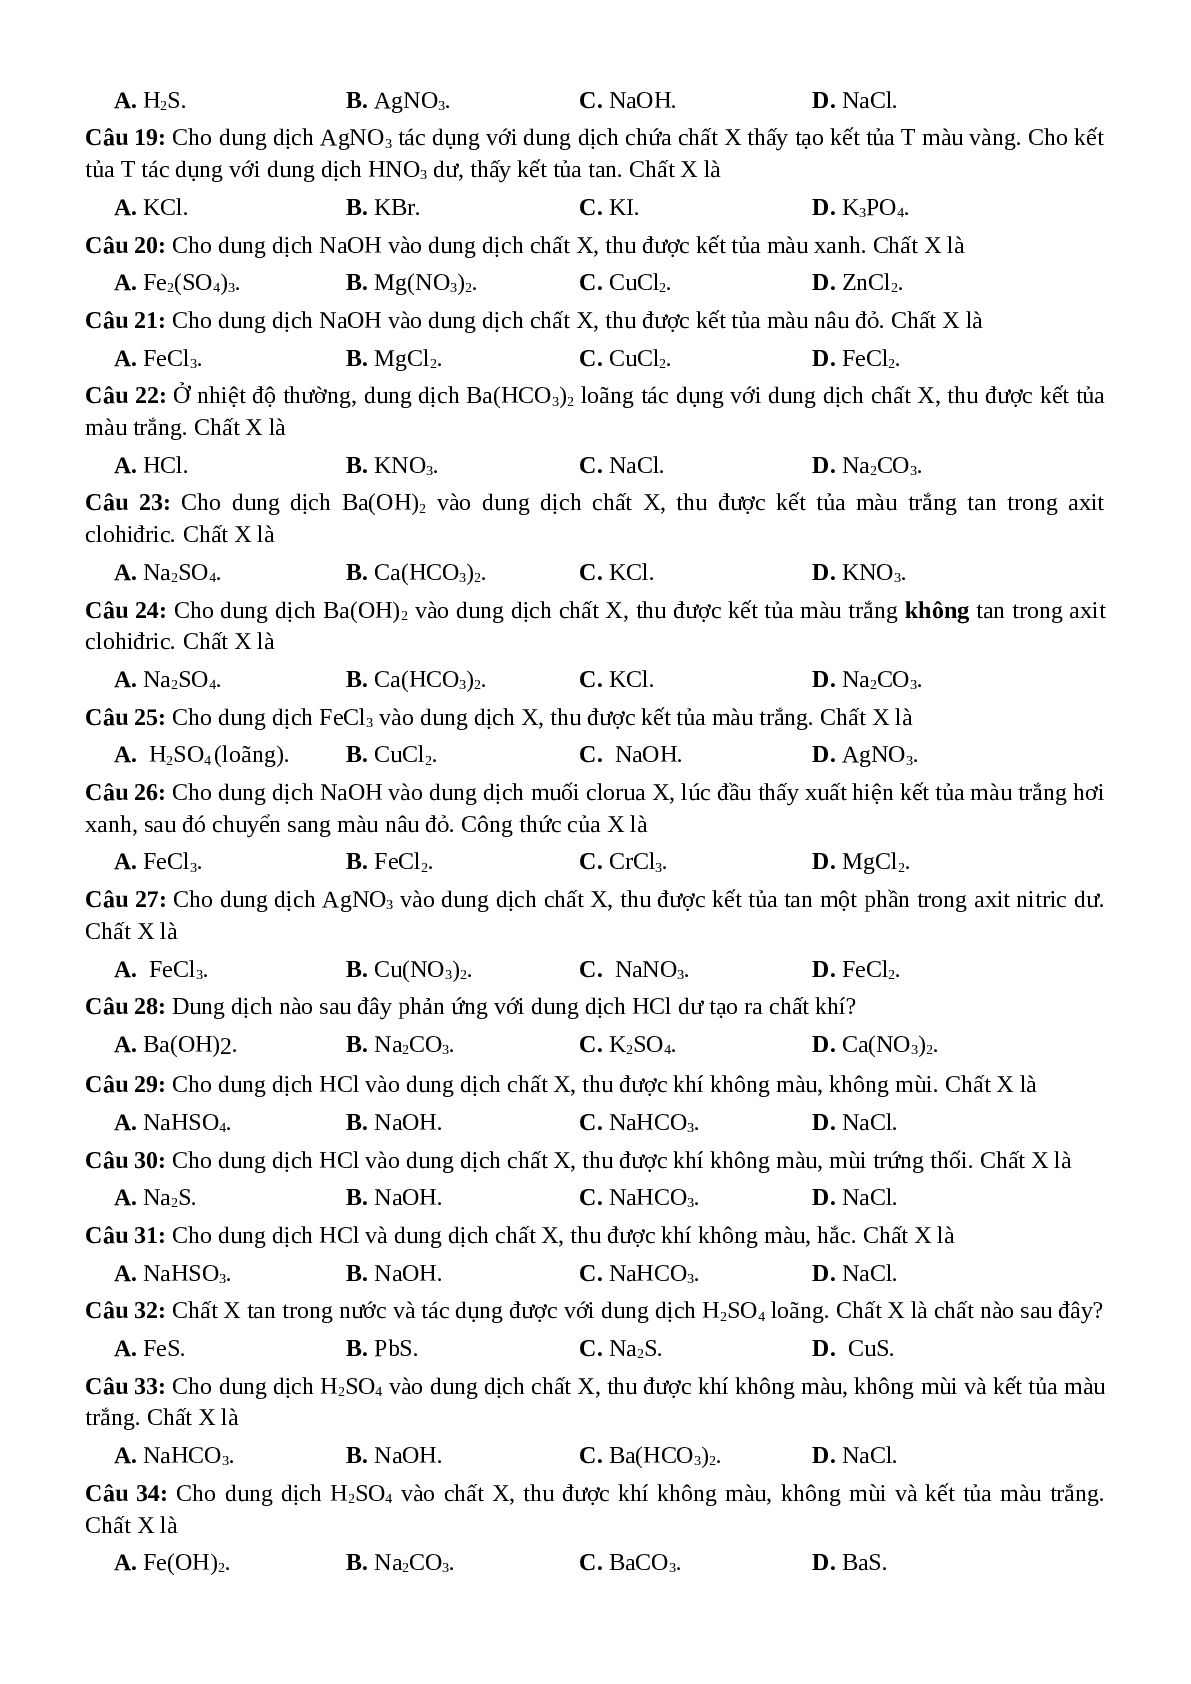 53 Câu hỏi trắc nghiệm xác định công thức, tên của chất - Hoá Học lớp 12 (trang 2)